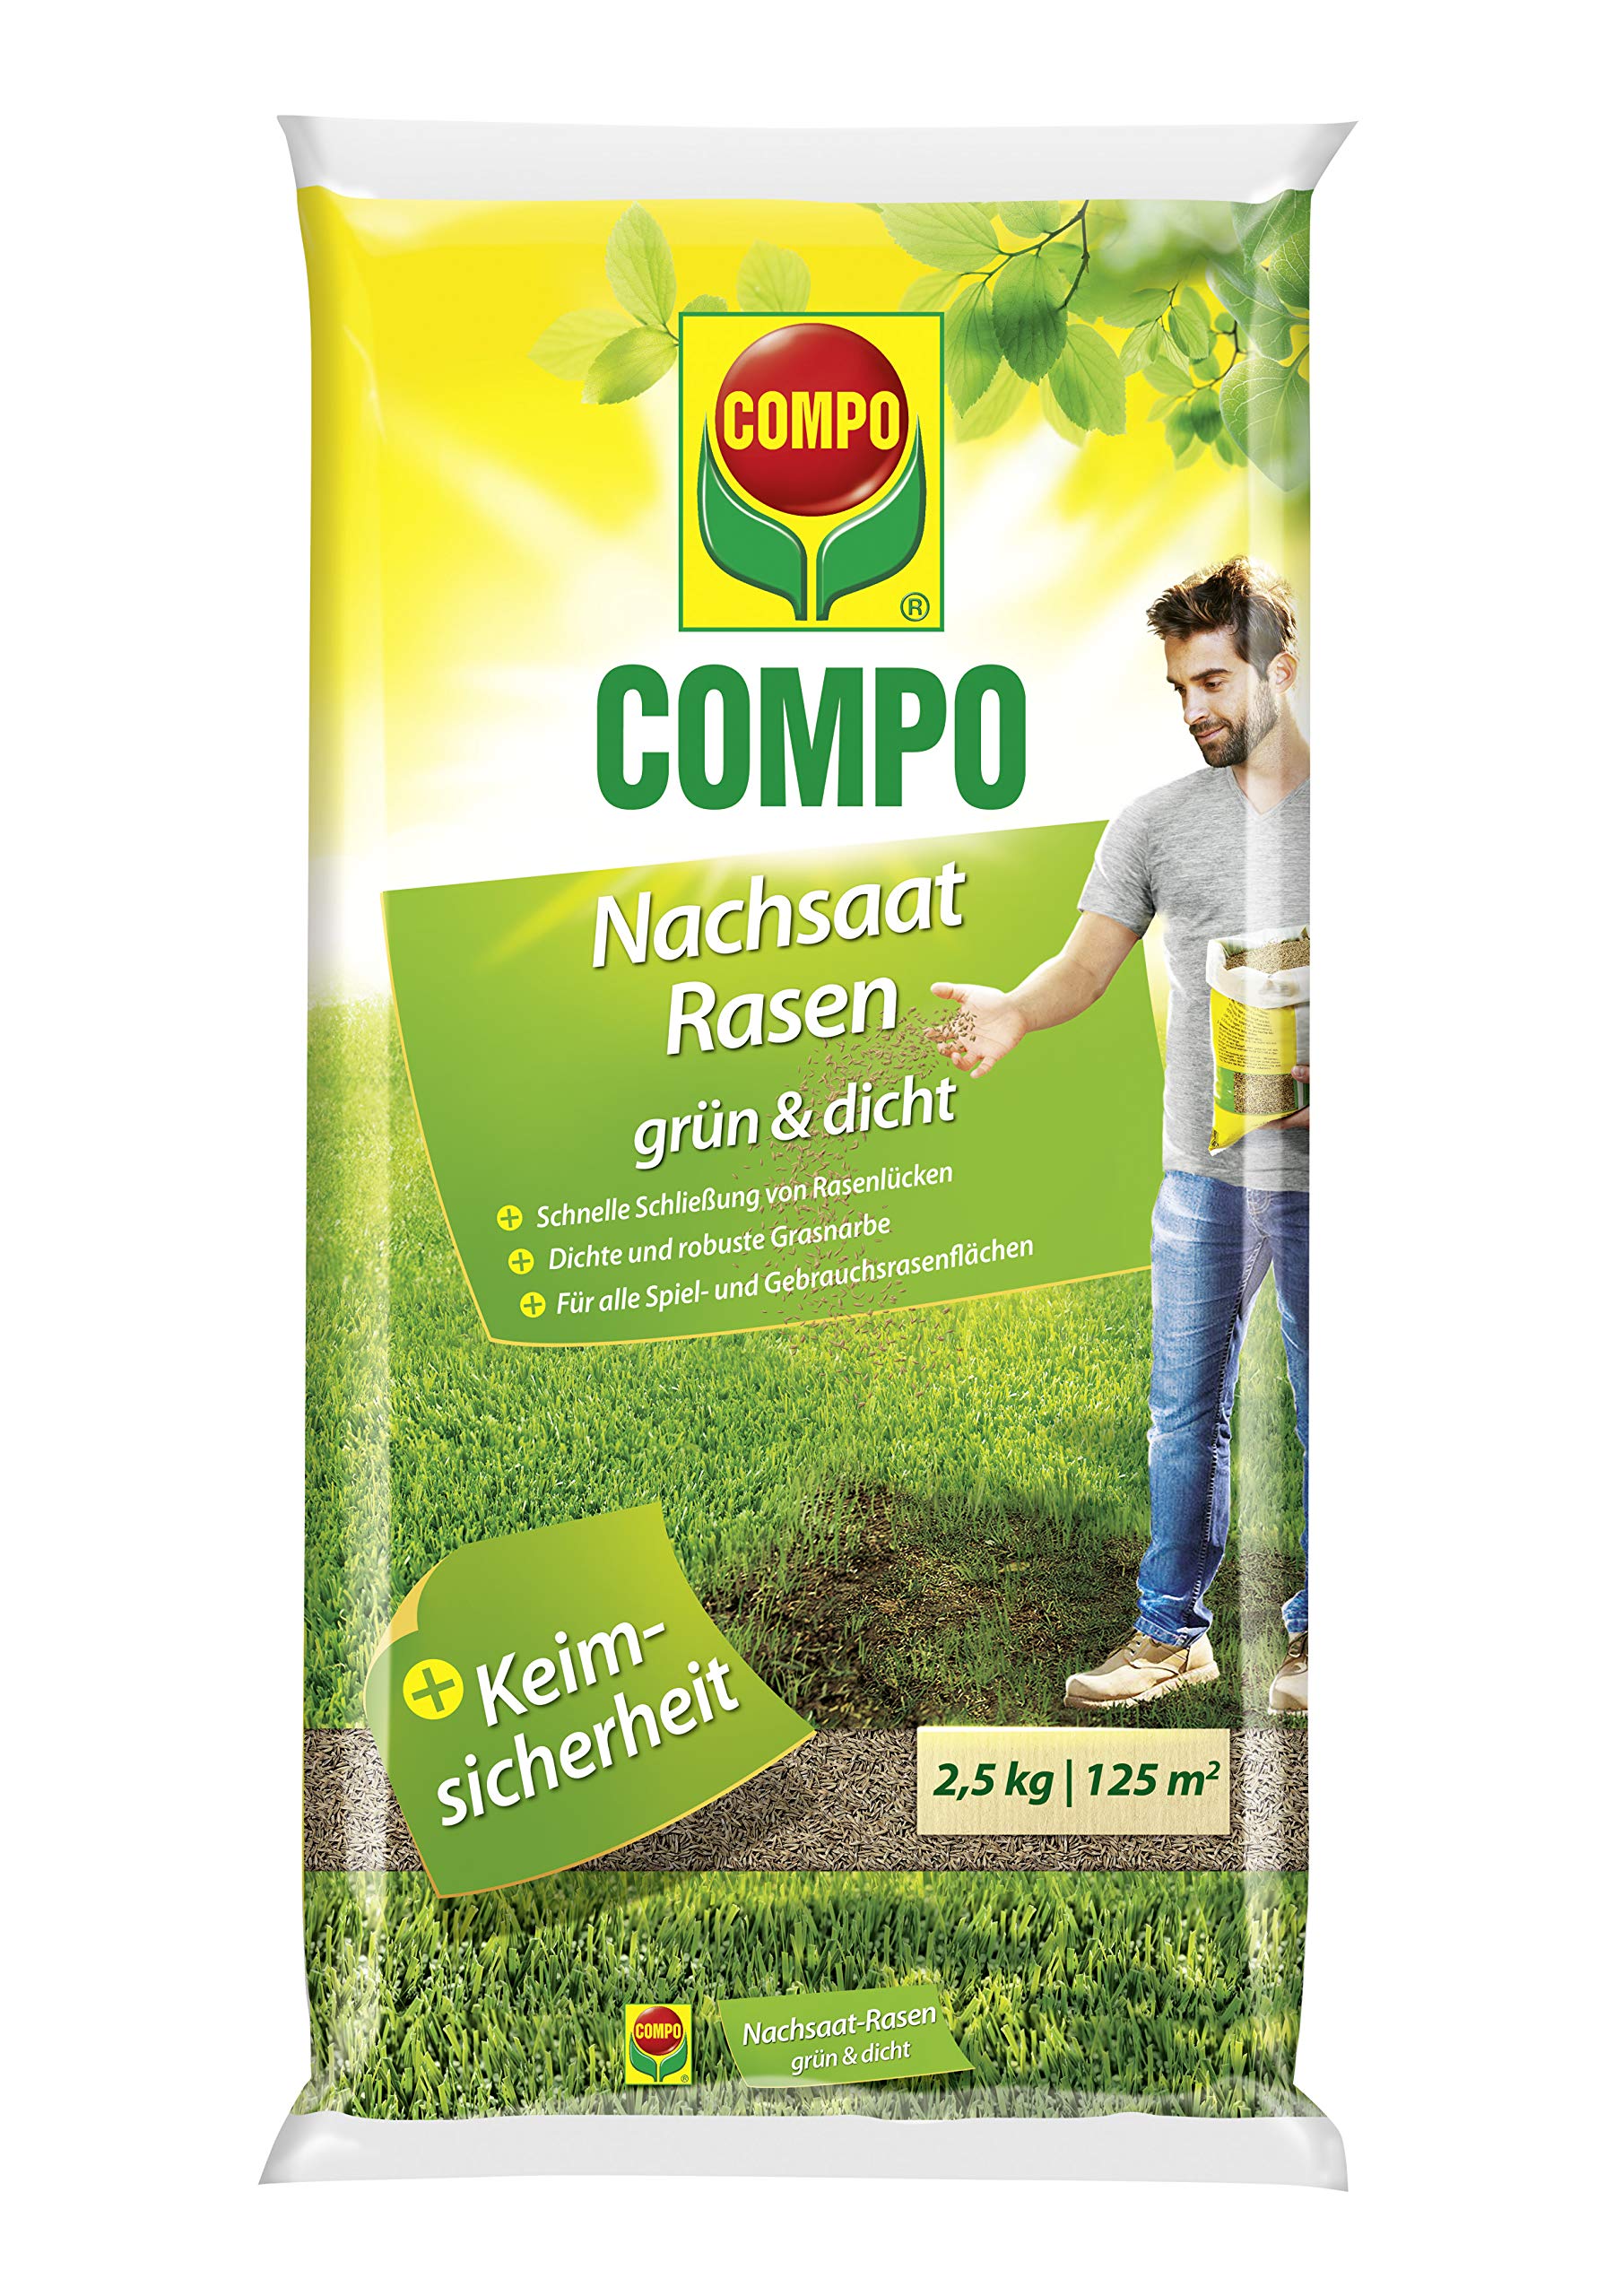 Compo Nachsaat-Rasen grün und dicht, Rasenmischung mit schnell keimenden Rasensorten, 2,5 kg, 125m²